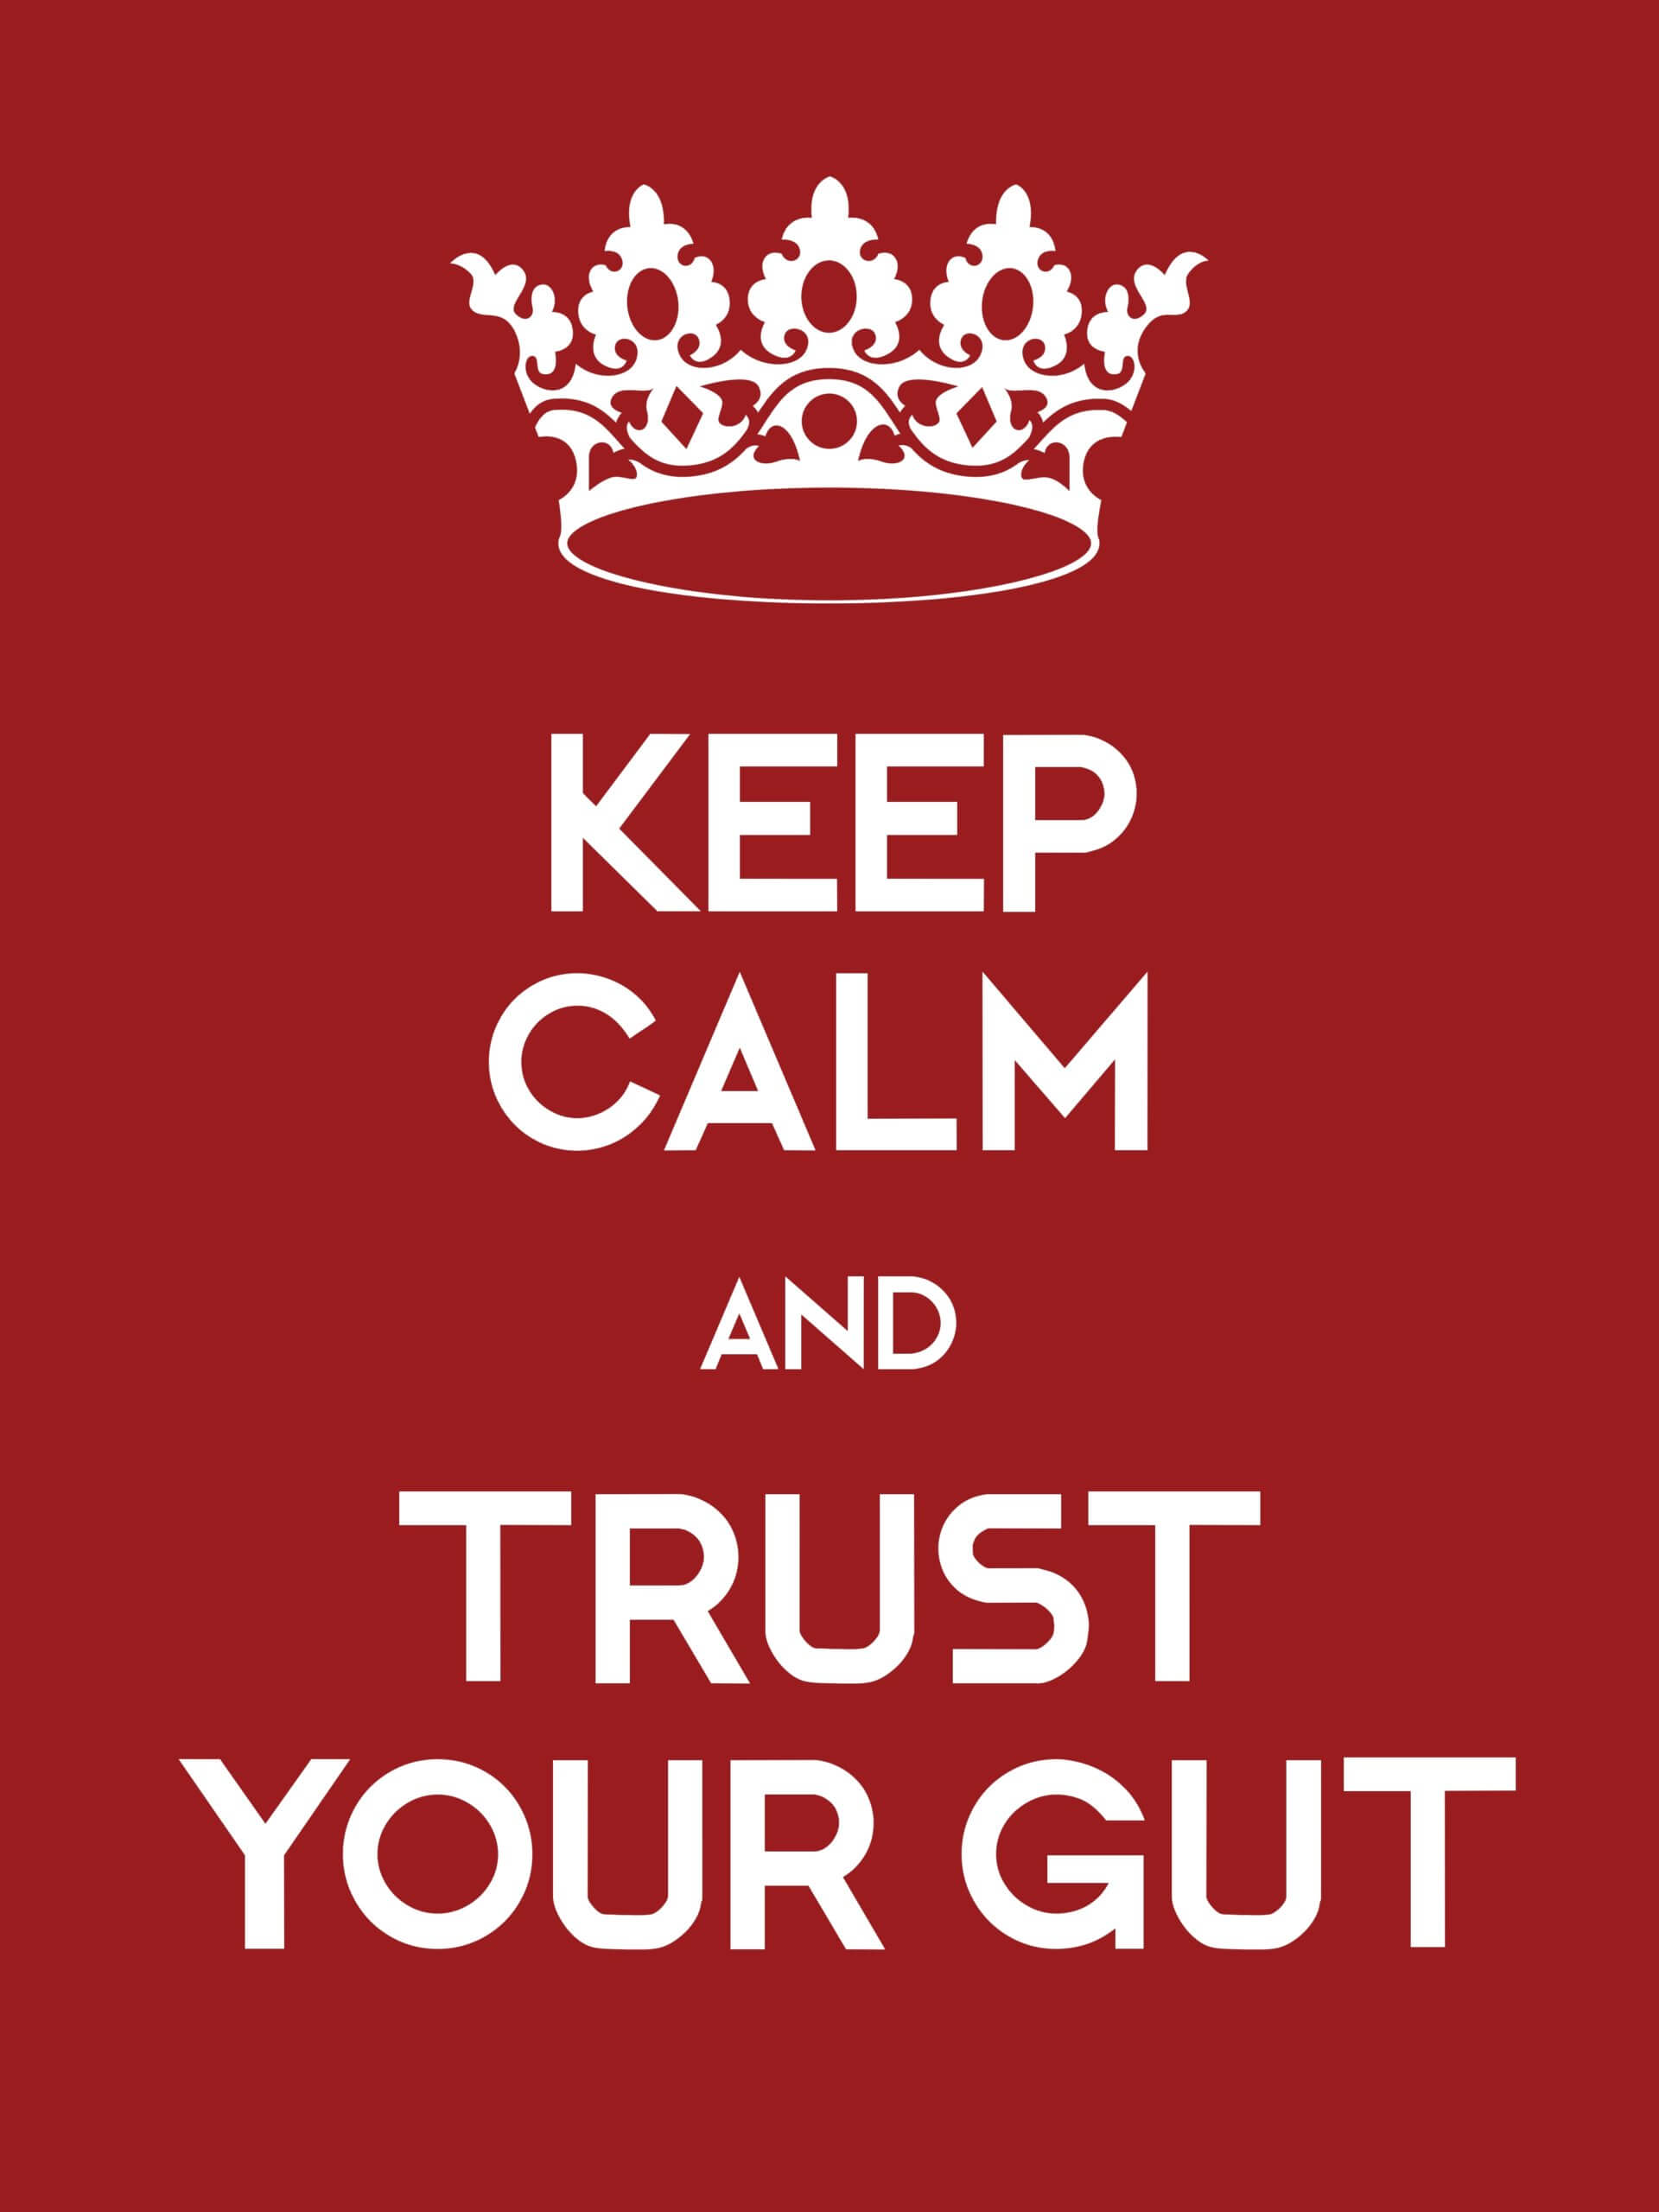 Trust your gut